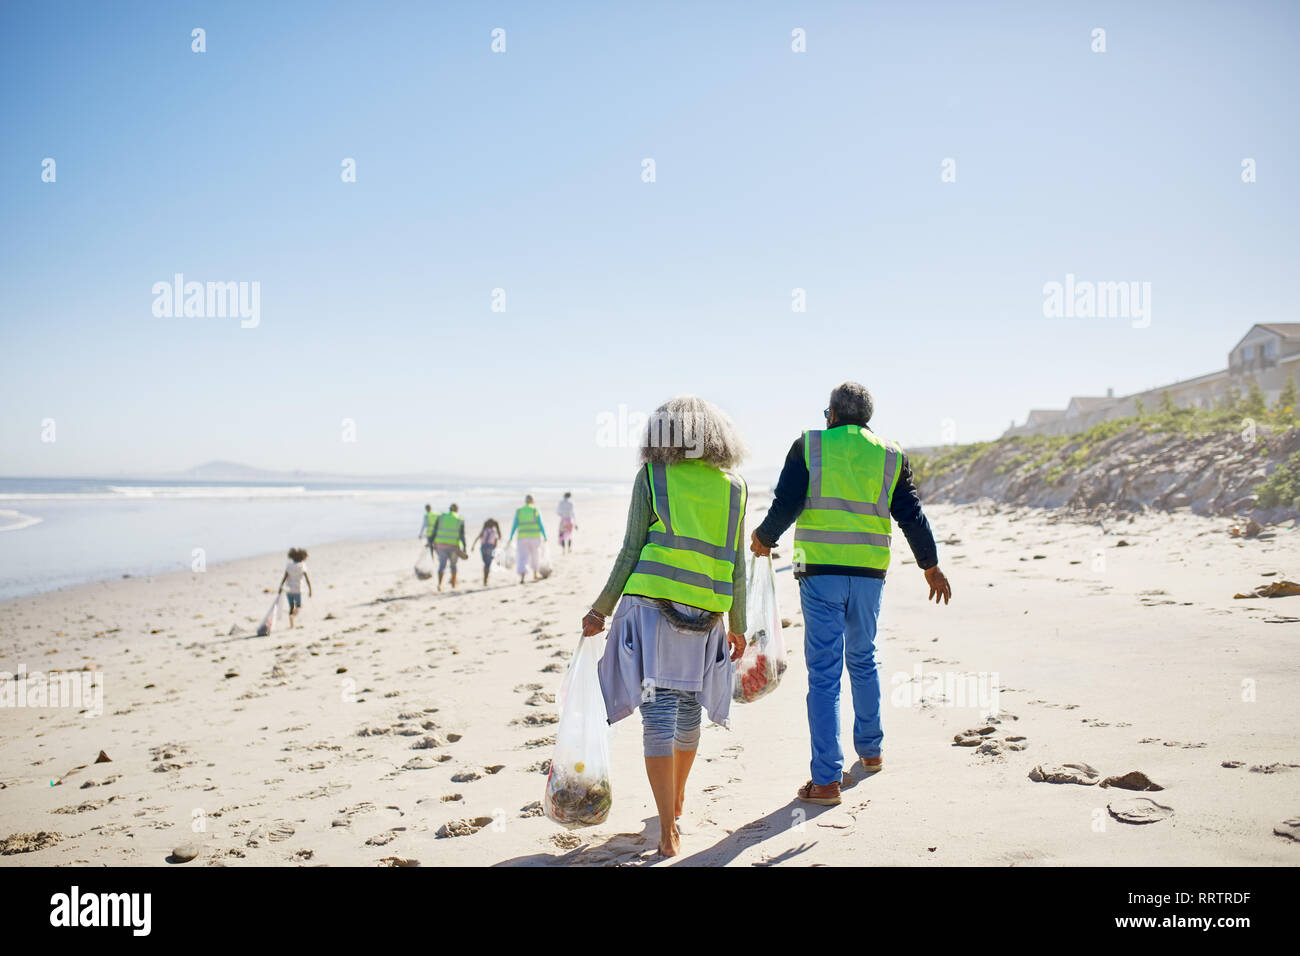 Les bénévoles le nettoyage de déchets sur la plage de sable ensoleillée Banque D'Images